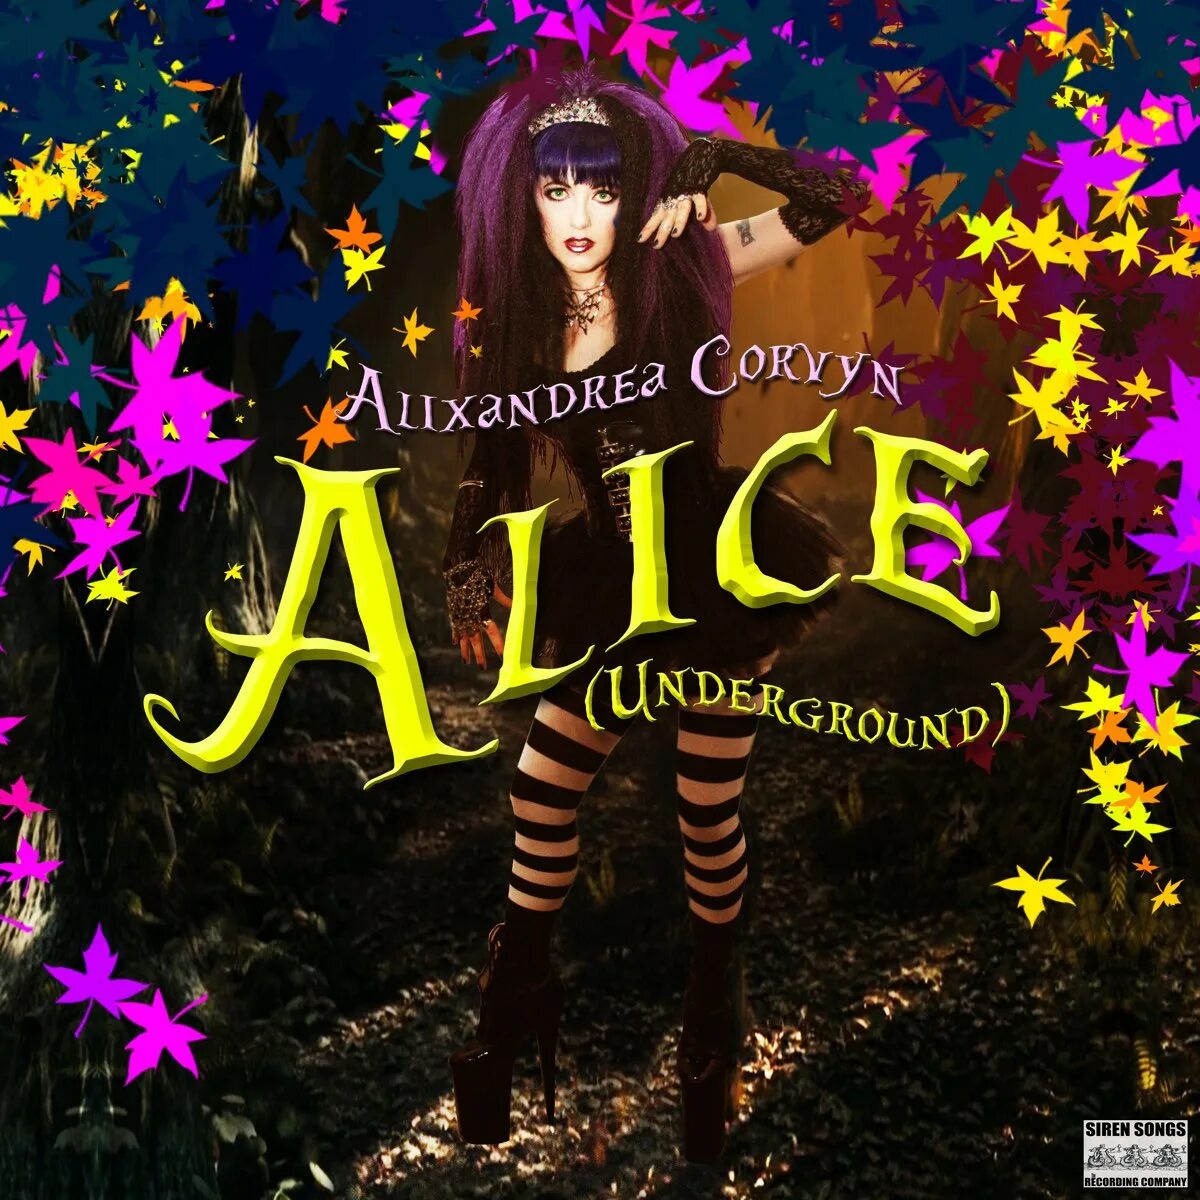 Алиса лучшие альбомы слушать. Слушай Алиса. Алиса альбомы. Элис андеграунд. Alixandrea Corvyn.